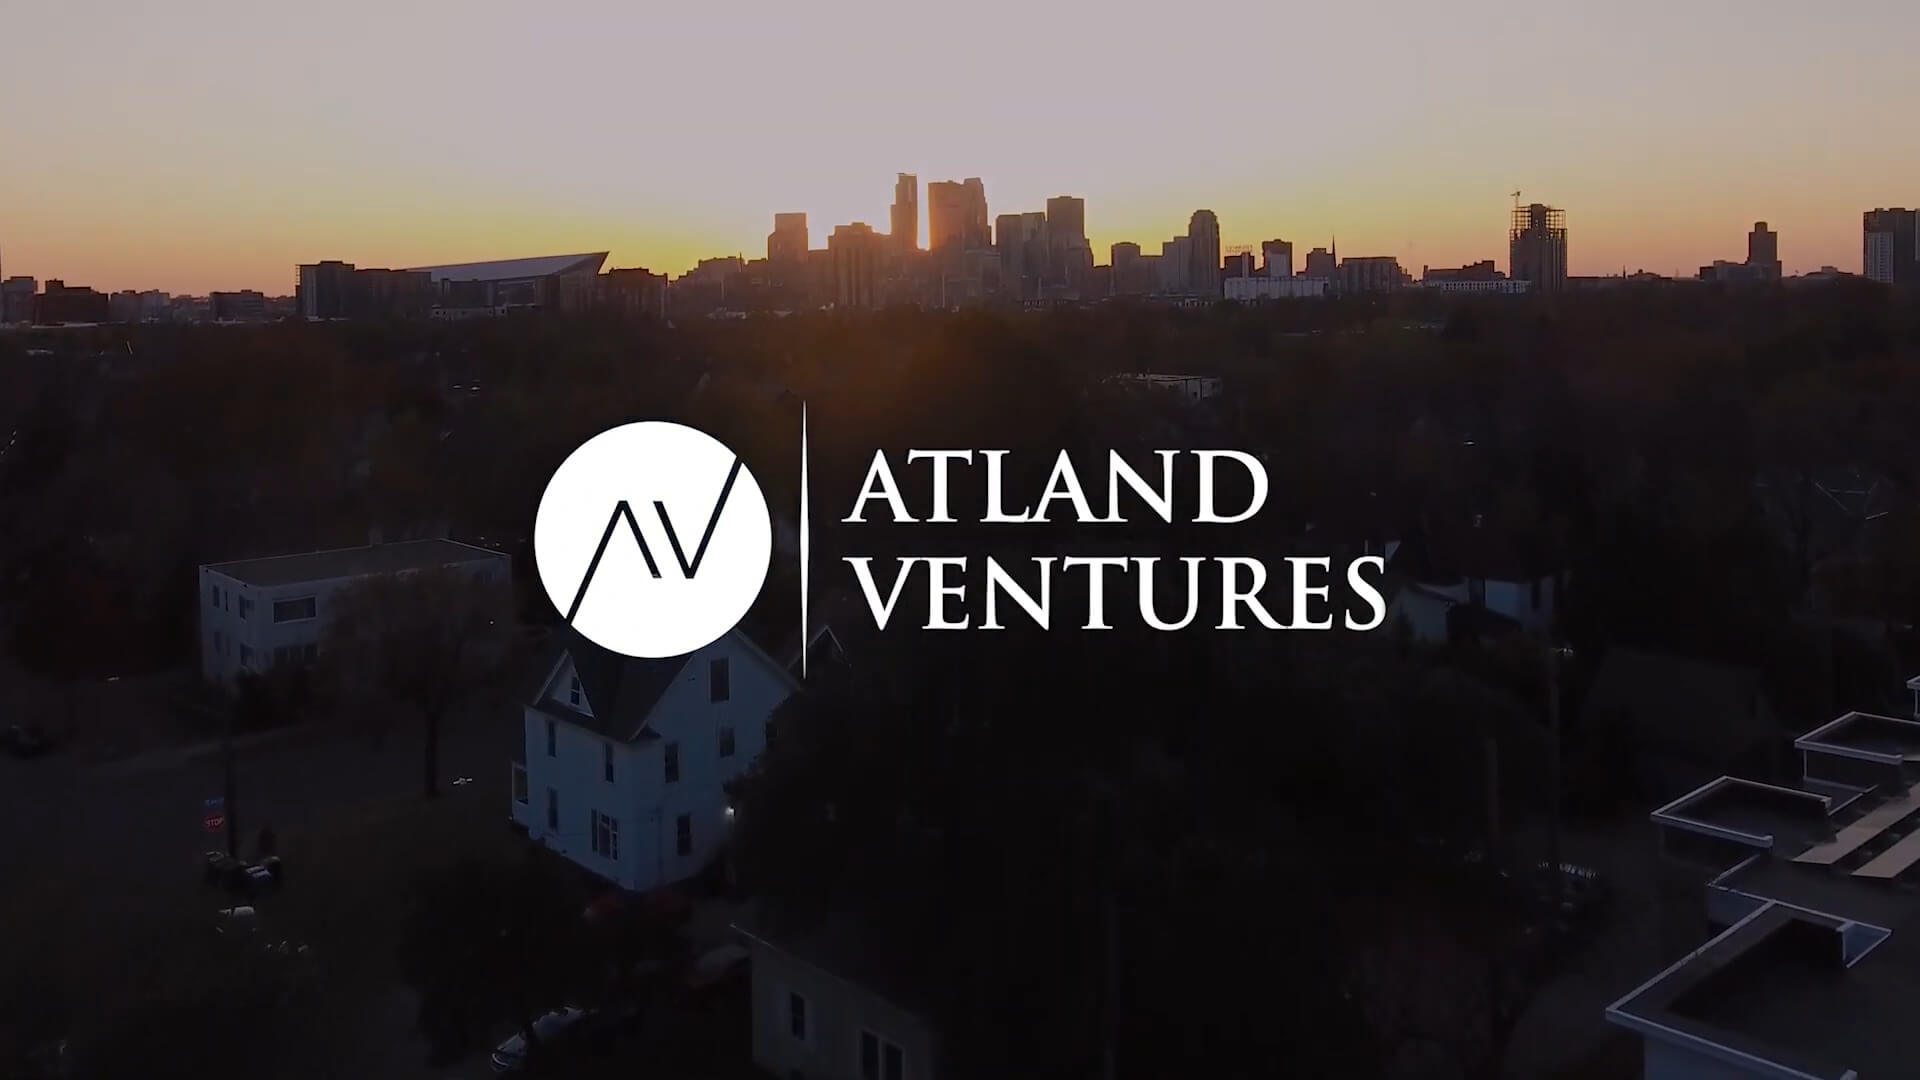 Atland Ventures